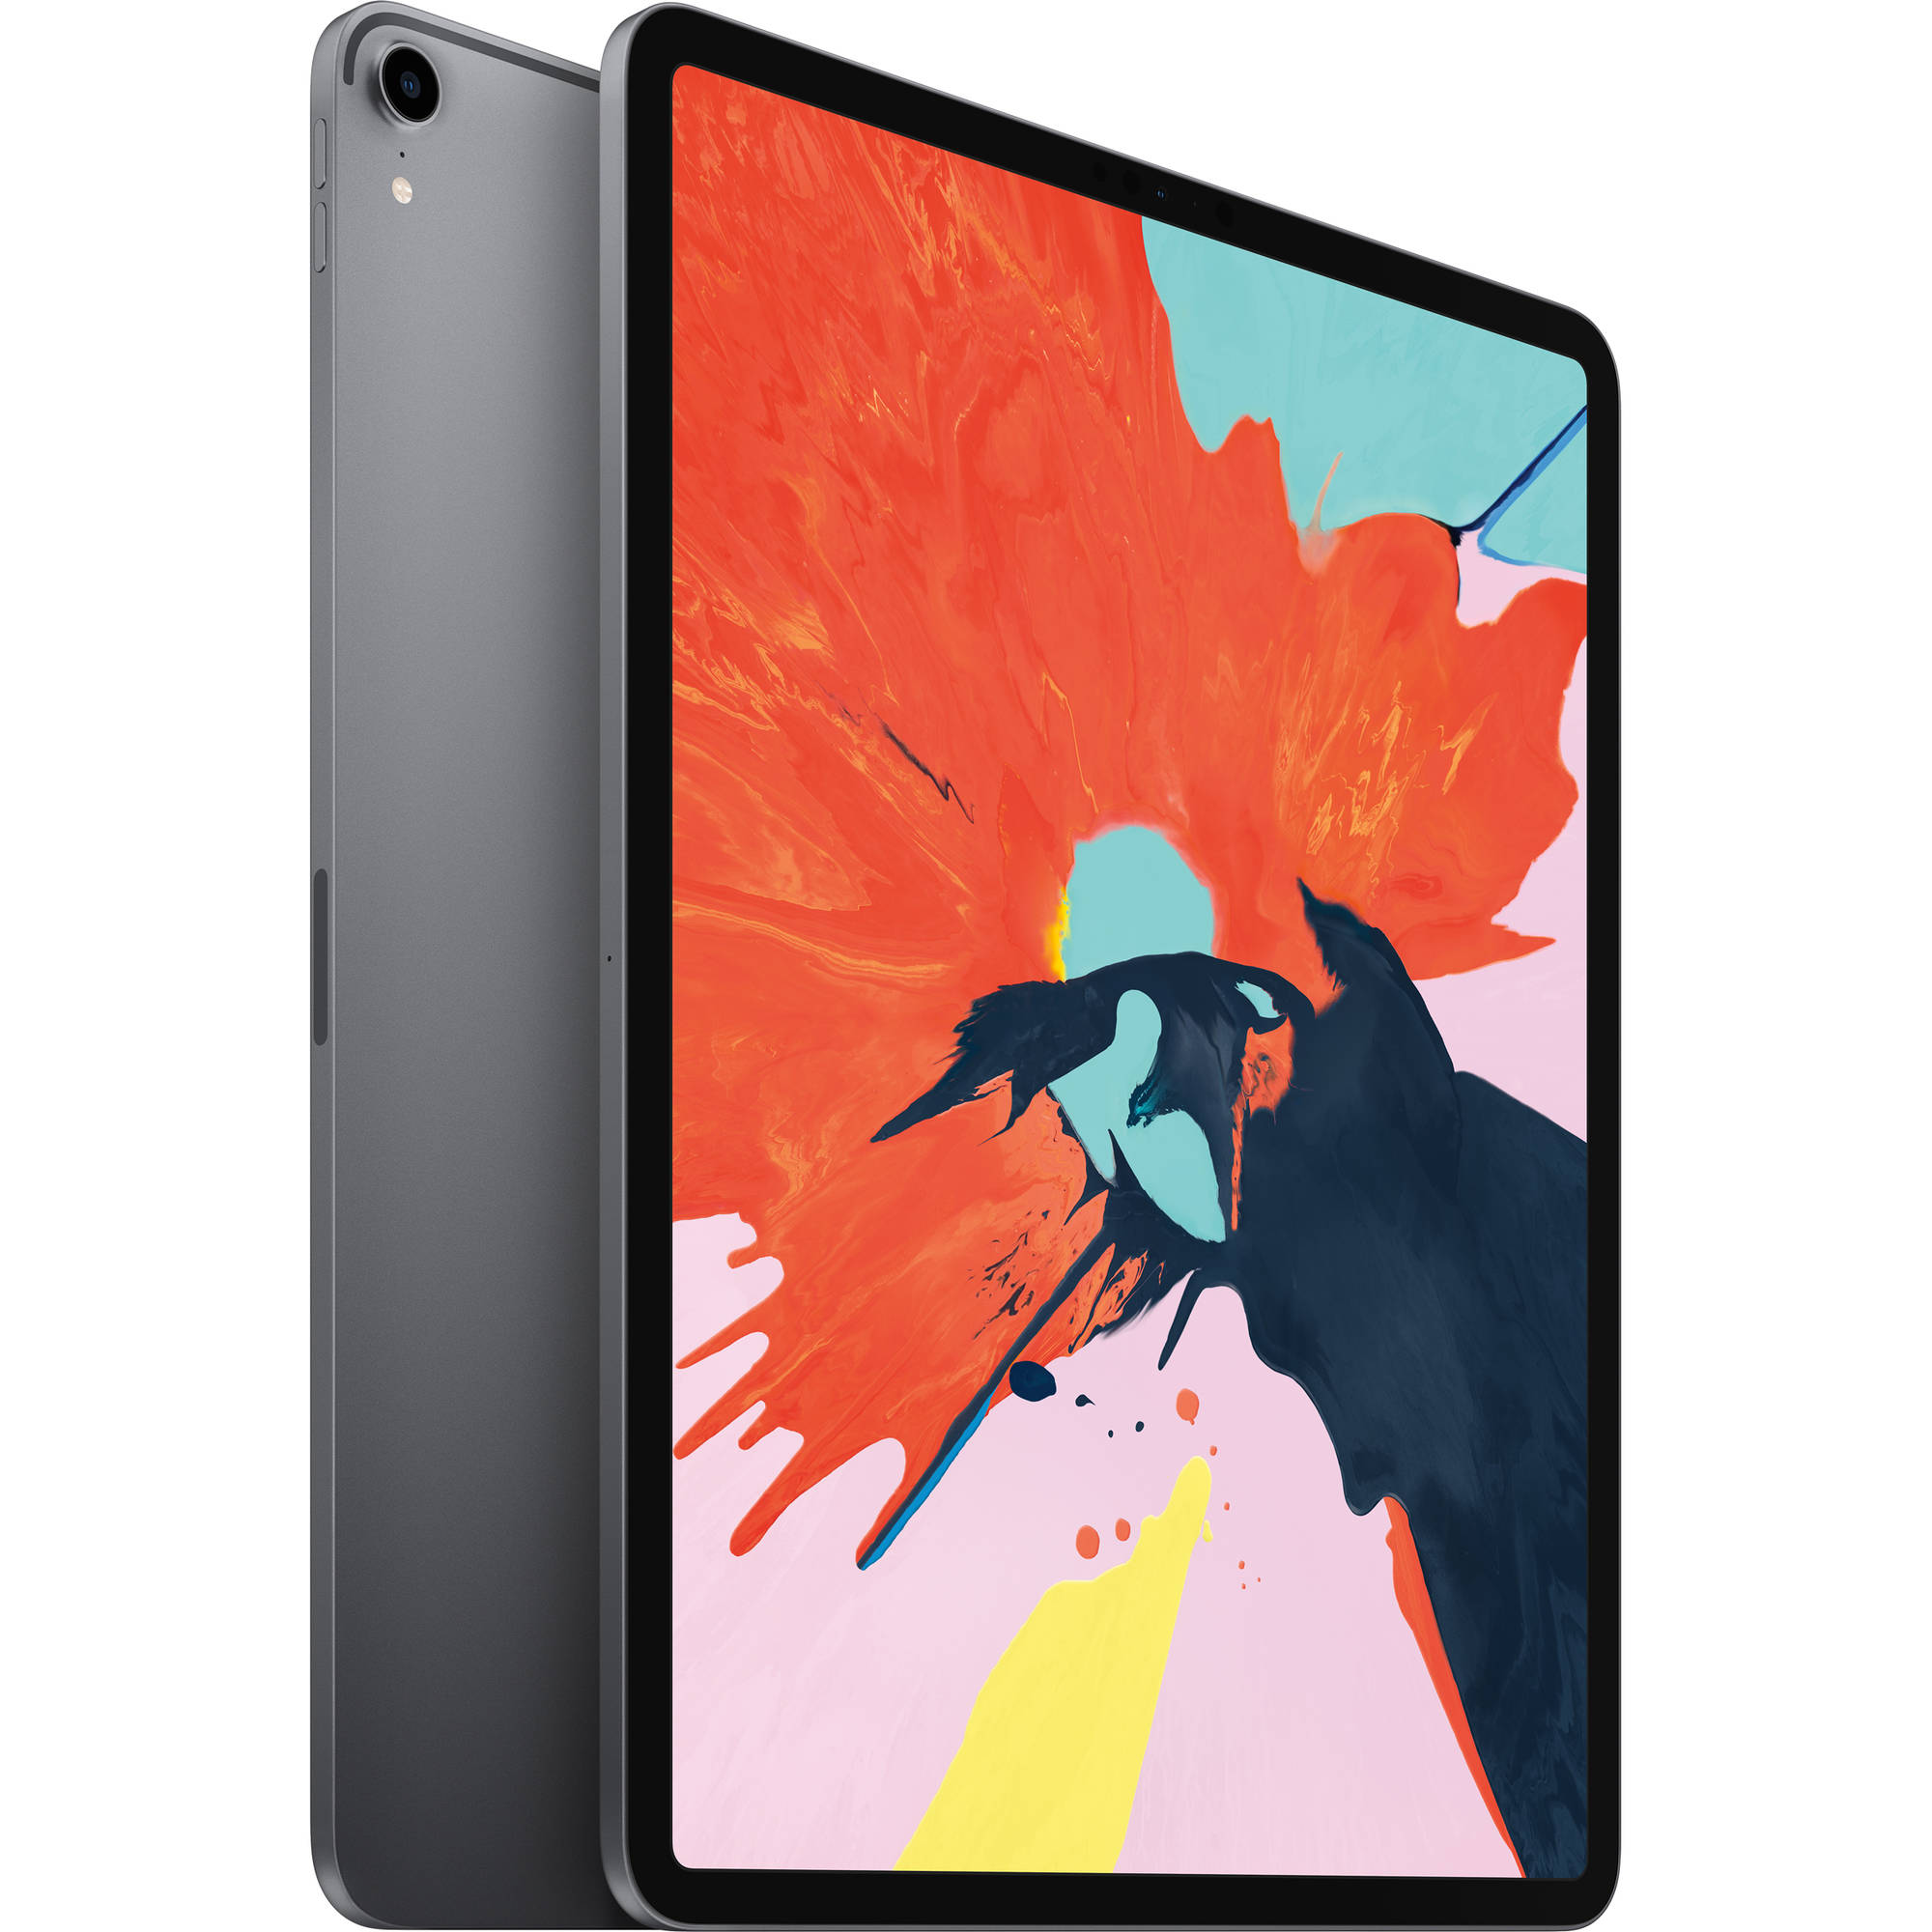  تبلت اپل مدل iPad Pro 2018 12.9 inch WiFi ظرفیت 64 گیگابایت